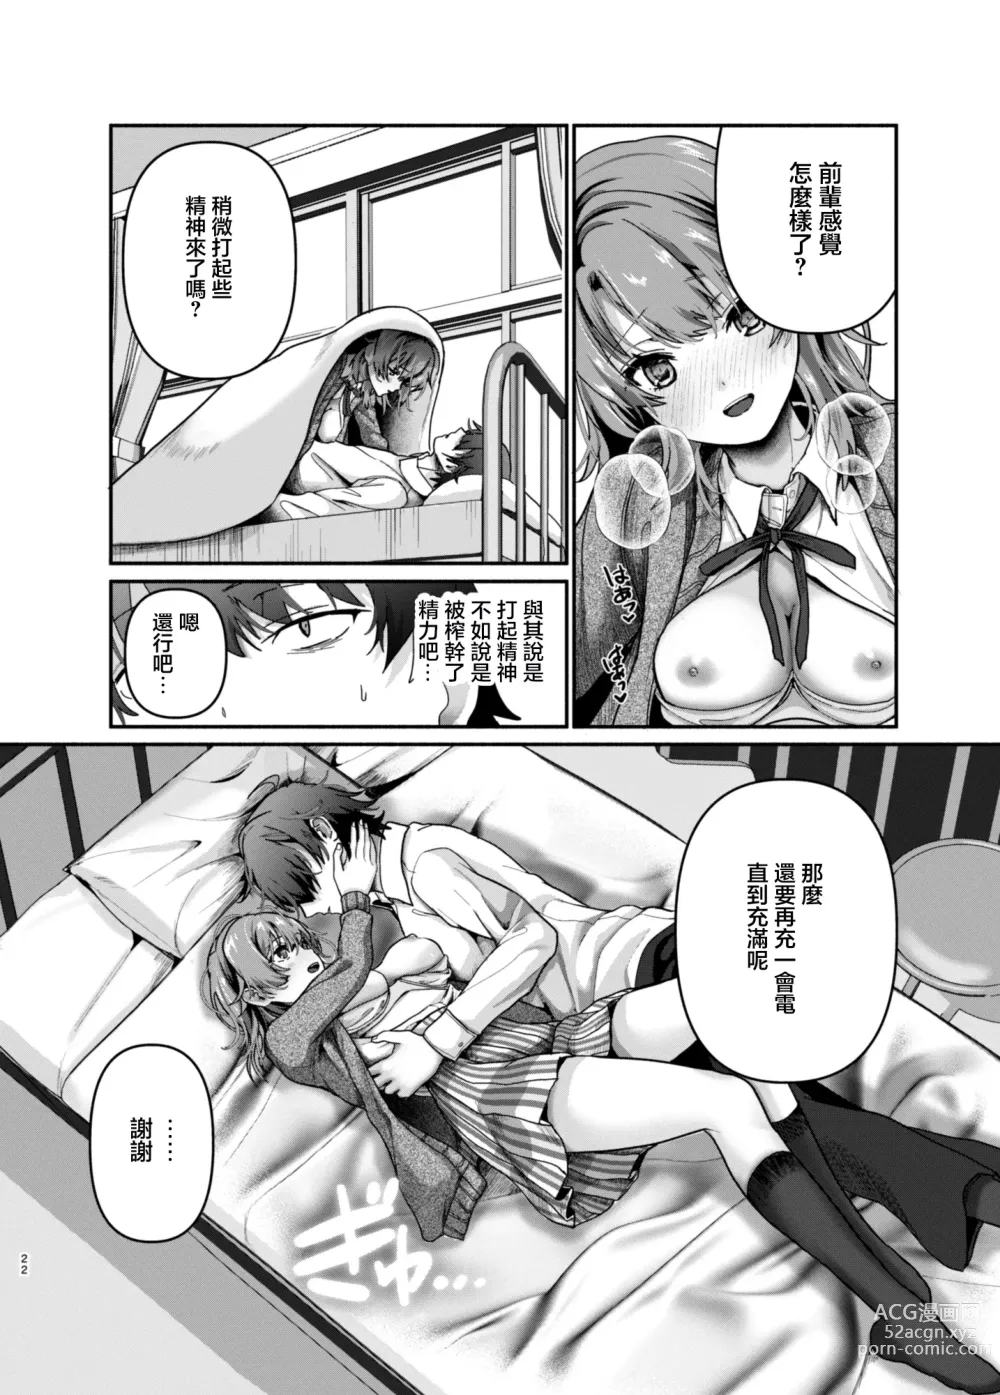 Page 21 of doujinshi 需要充電補充一下元氣嗎?